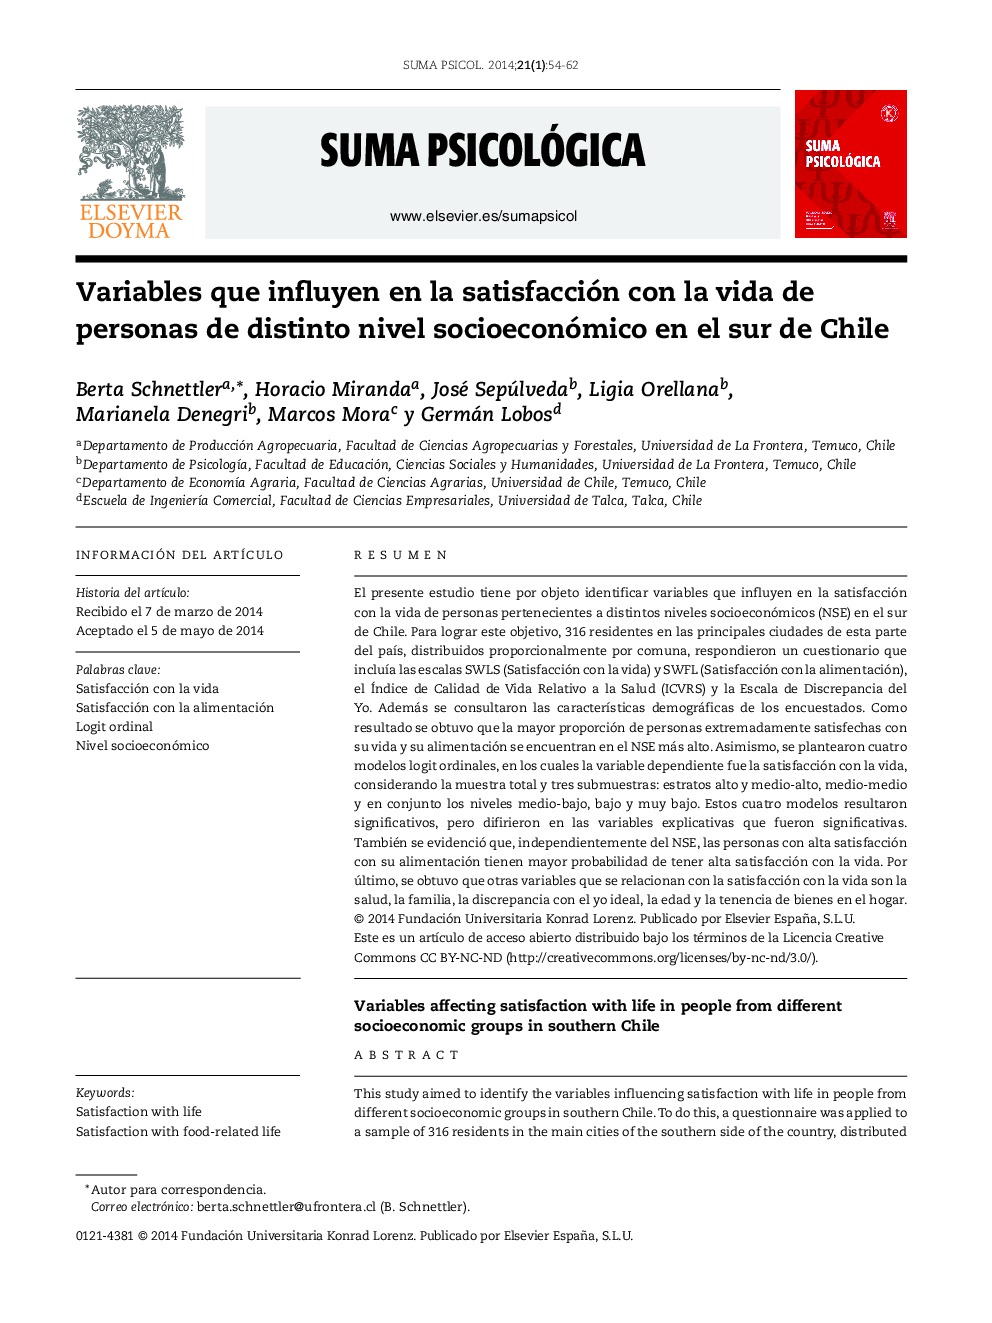 متغیرهایی که بر رضایت از زندگی افراد در سطح اجتماعی و اقتصادی مختلف در جنوب شیلی تاثیر می گذارد 